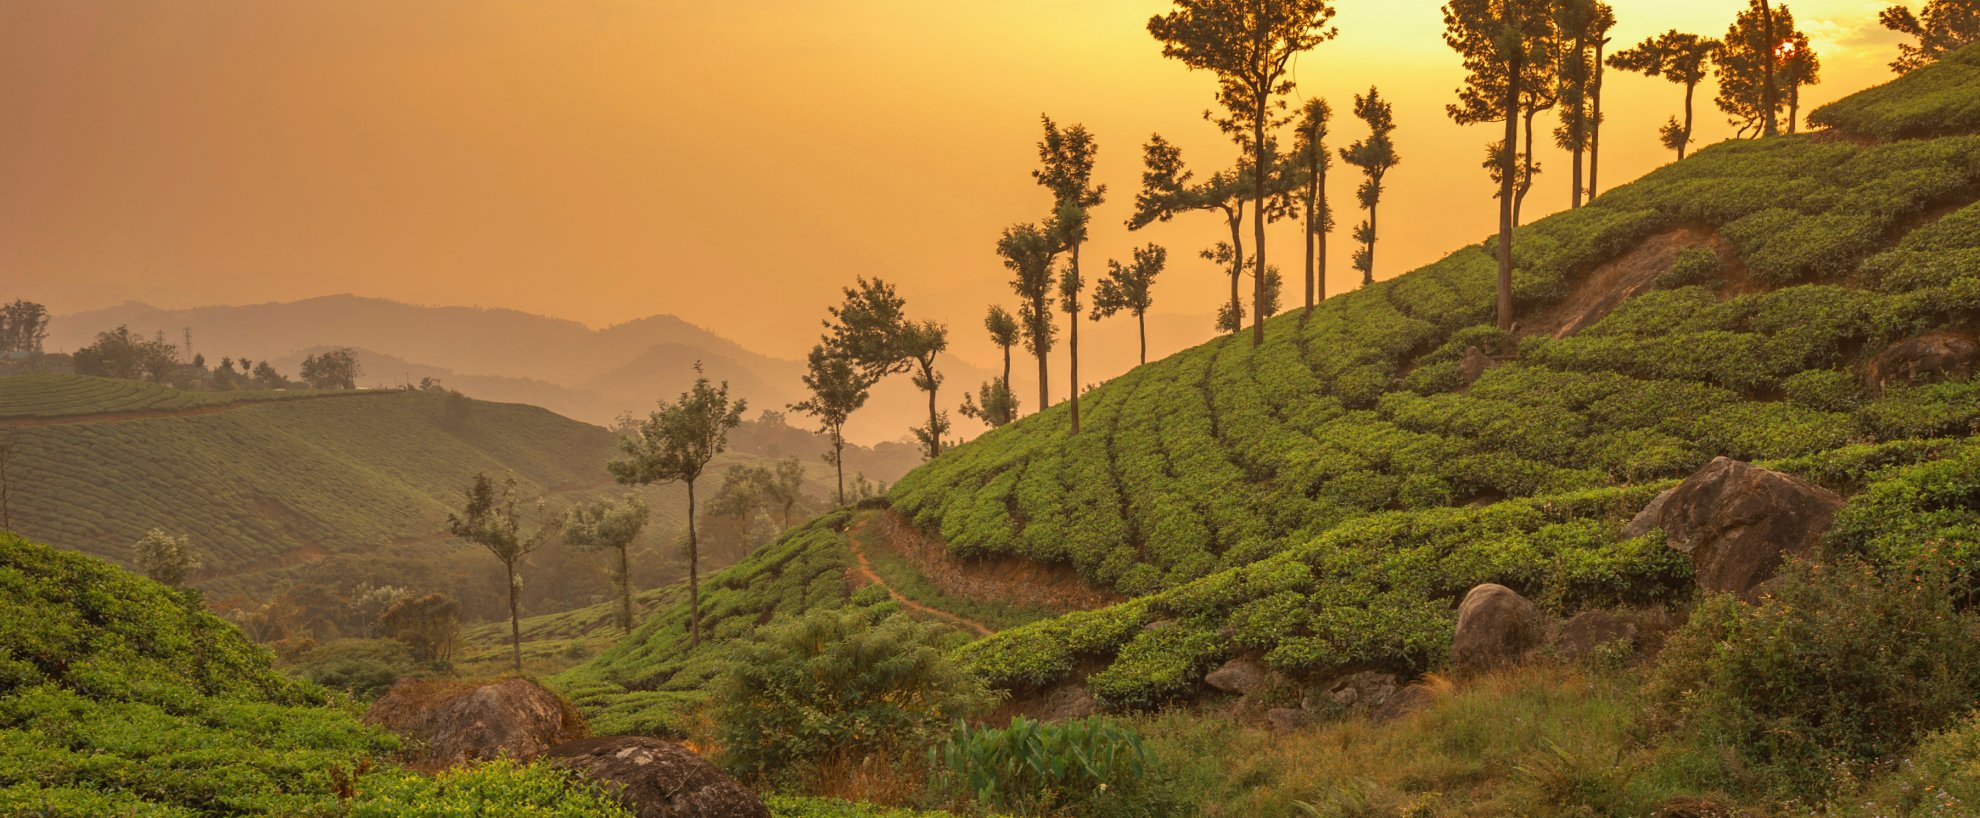 Urlaub Reise Reisen Indien Südindien Tee Teplantage Sonnenuntergang